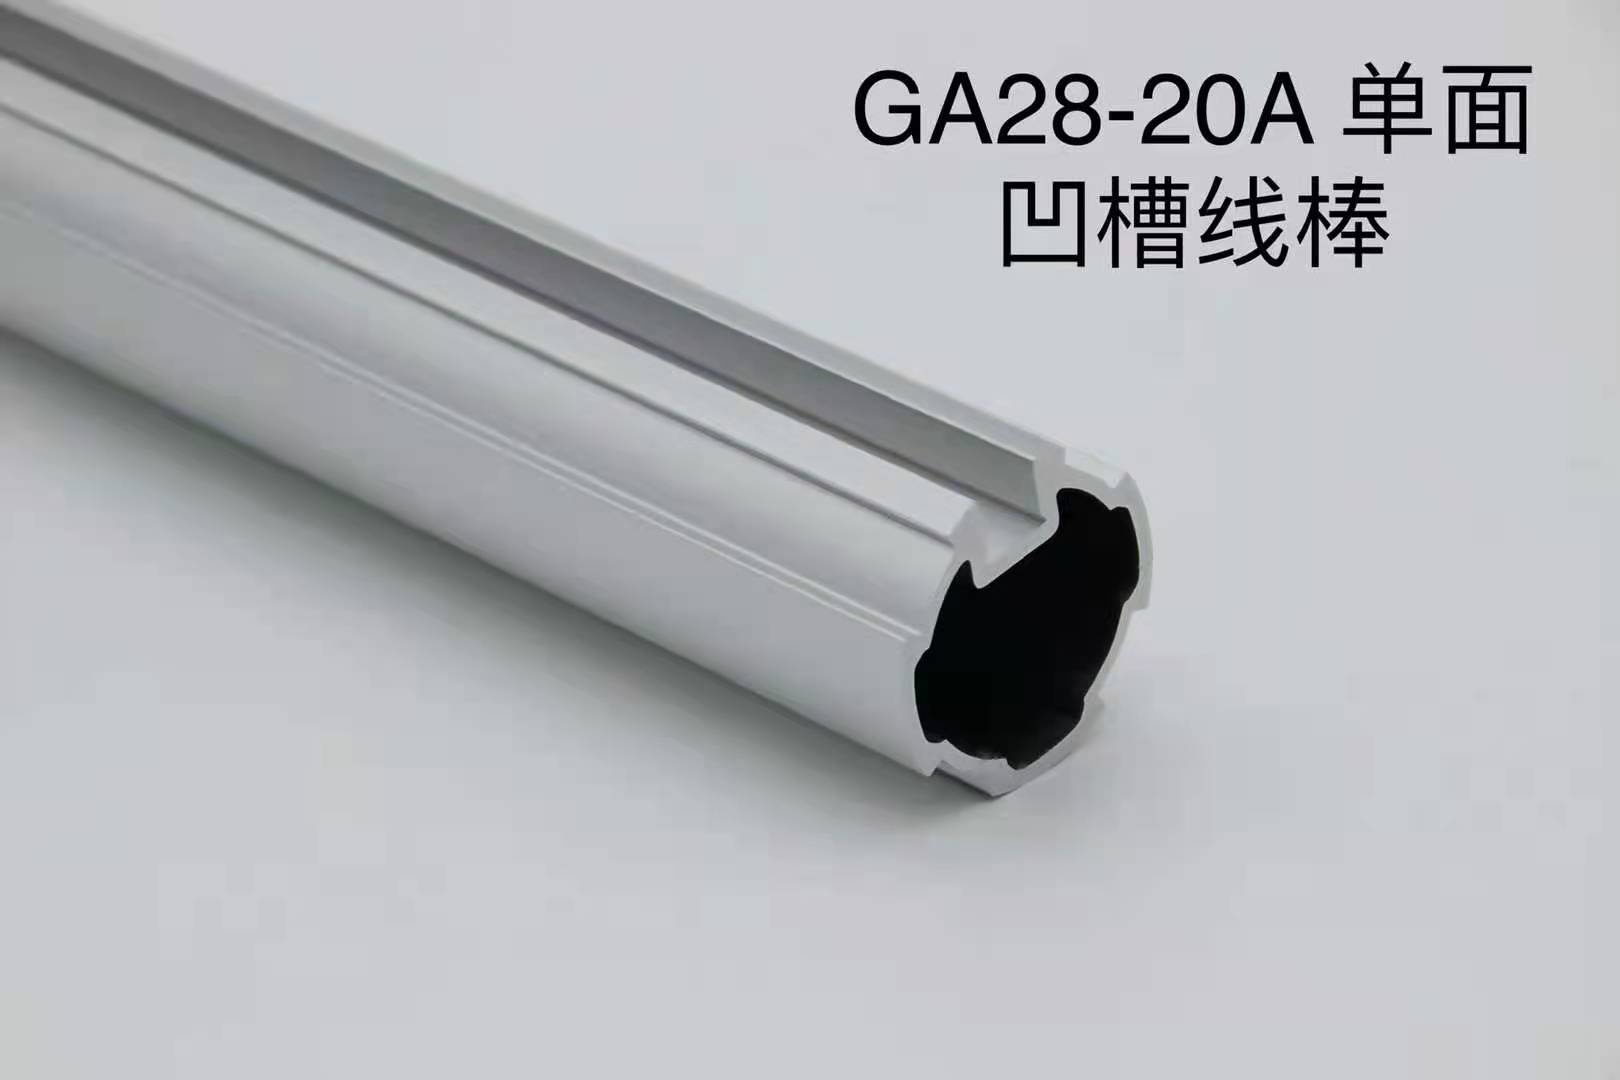 GA28-20A單面凹槽線棒